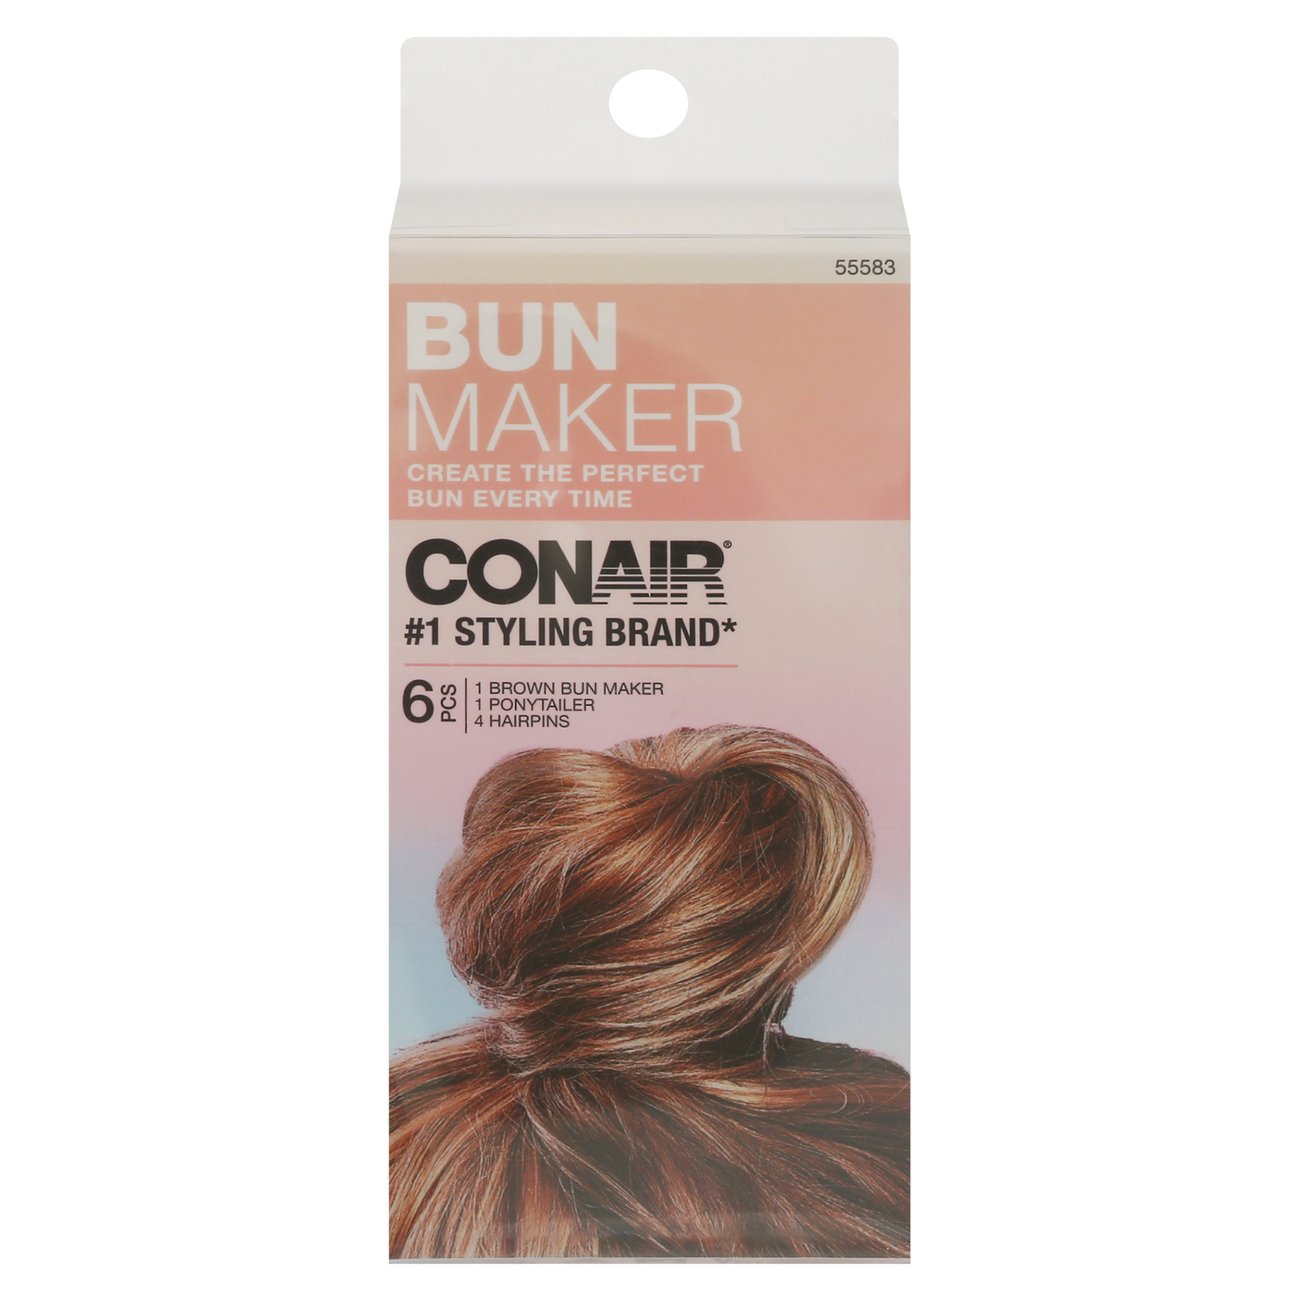 Conair Bun Maker - Shop Hair Accessories at H-E-B